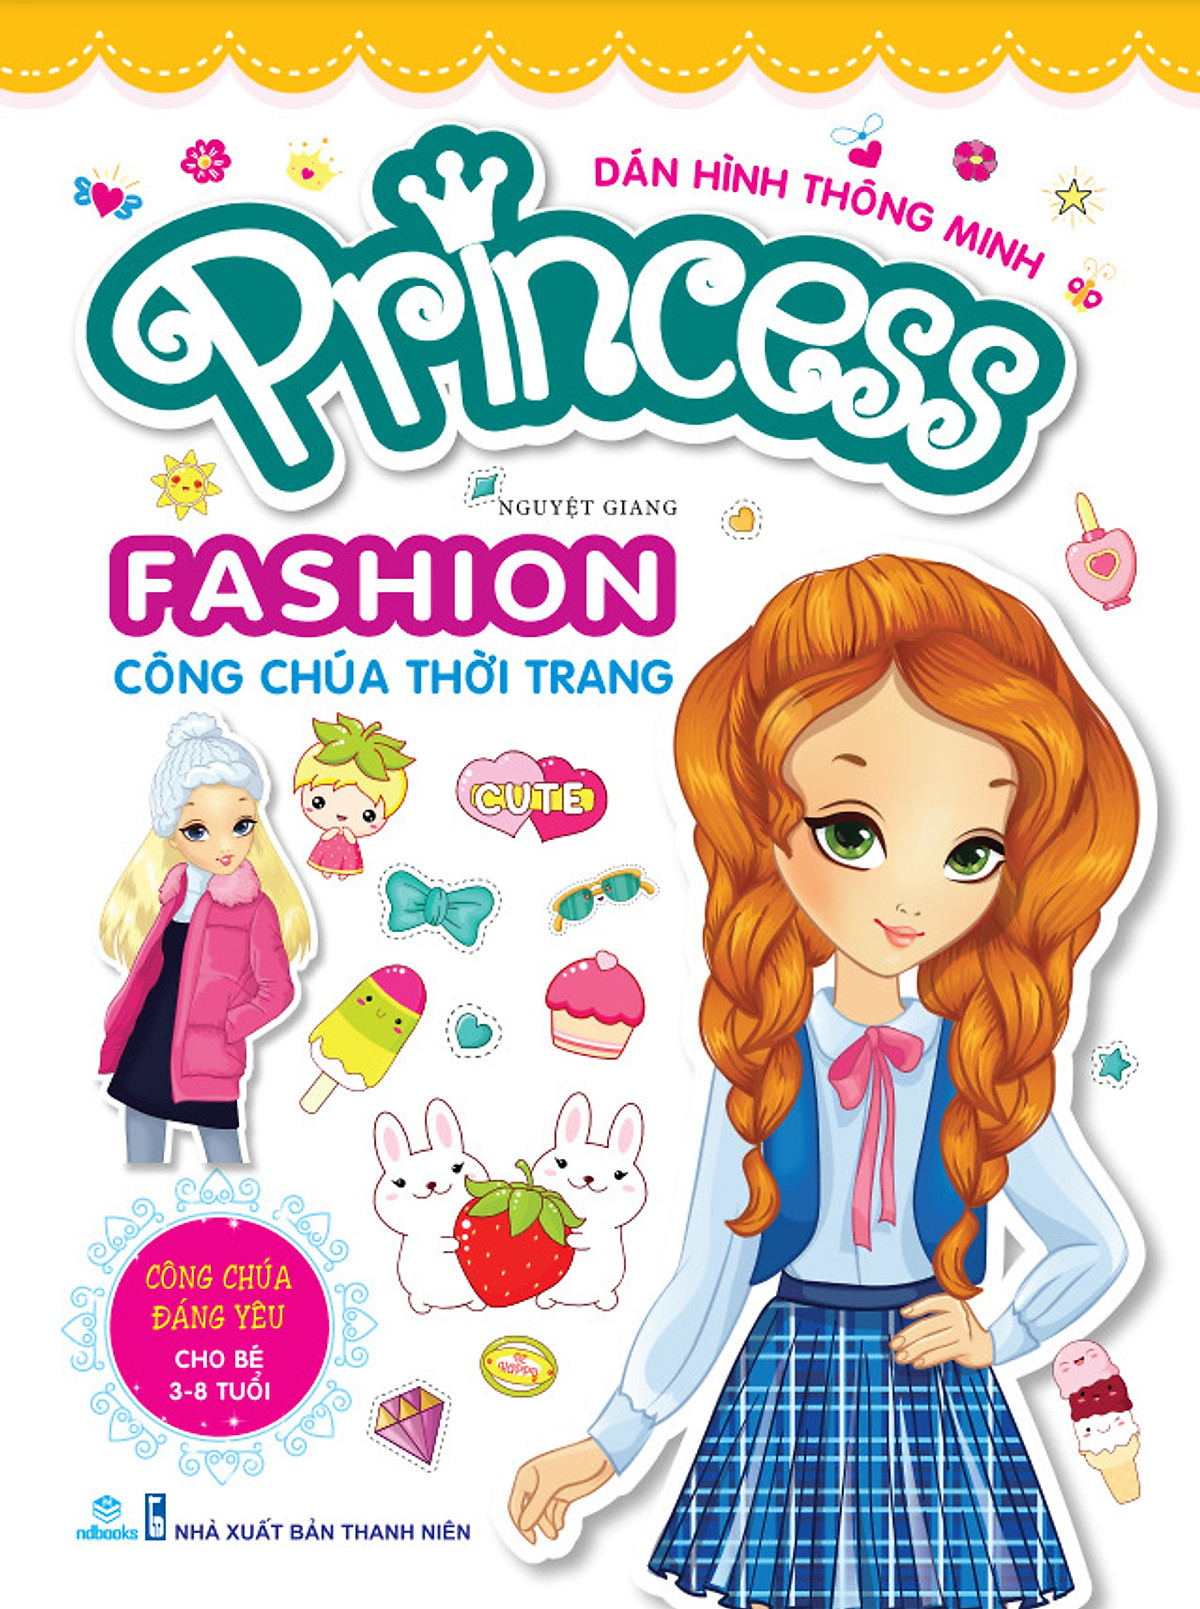  Dán hình thông minh Princess Fashion công chúa thời trang - Công chúa đáng yêu (cho bé từ 3-8 tuổi )